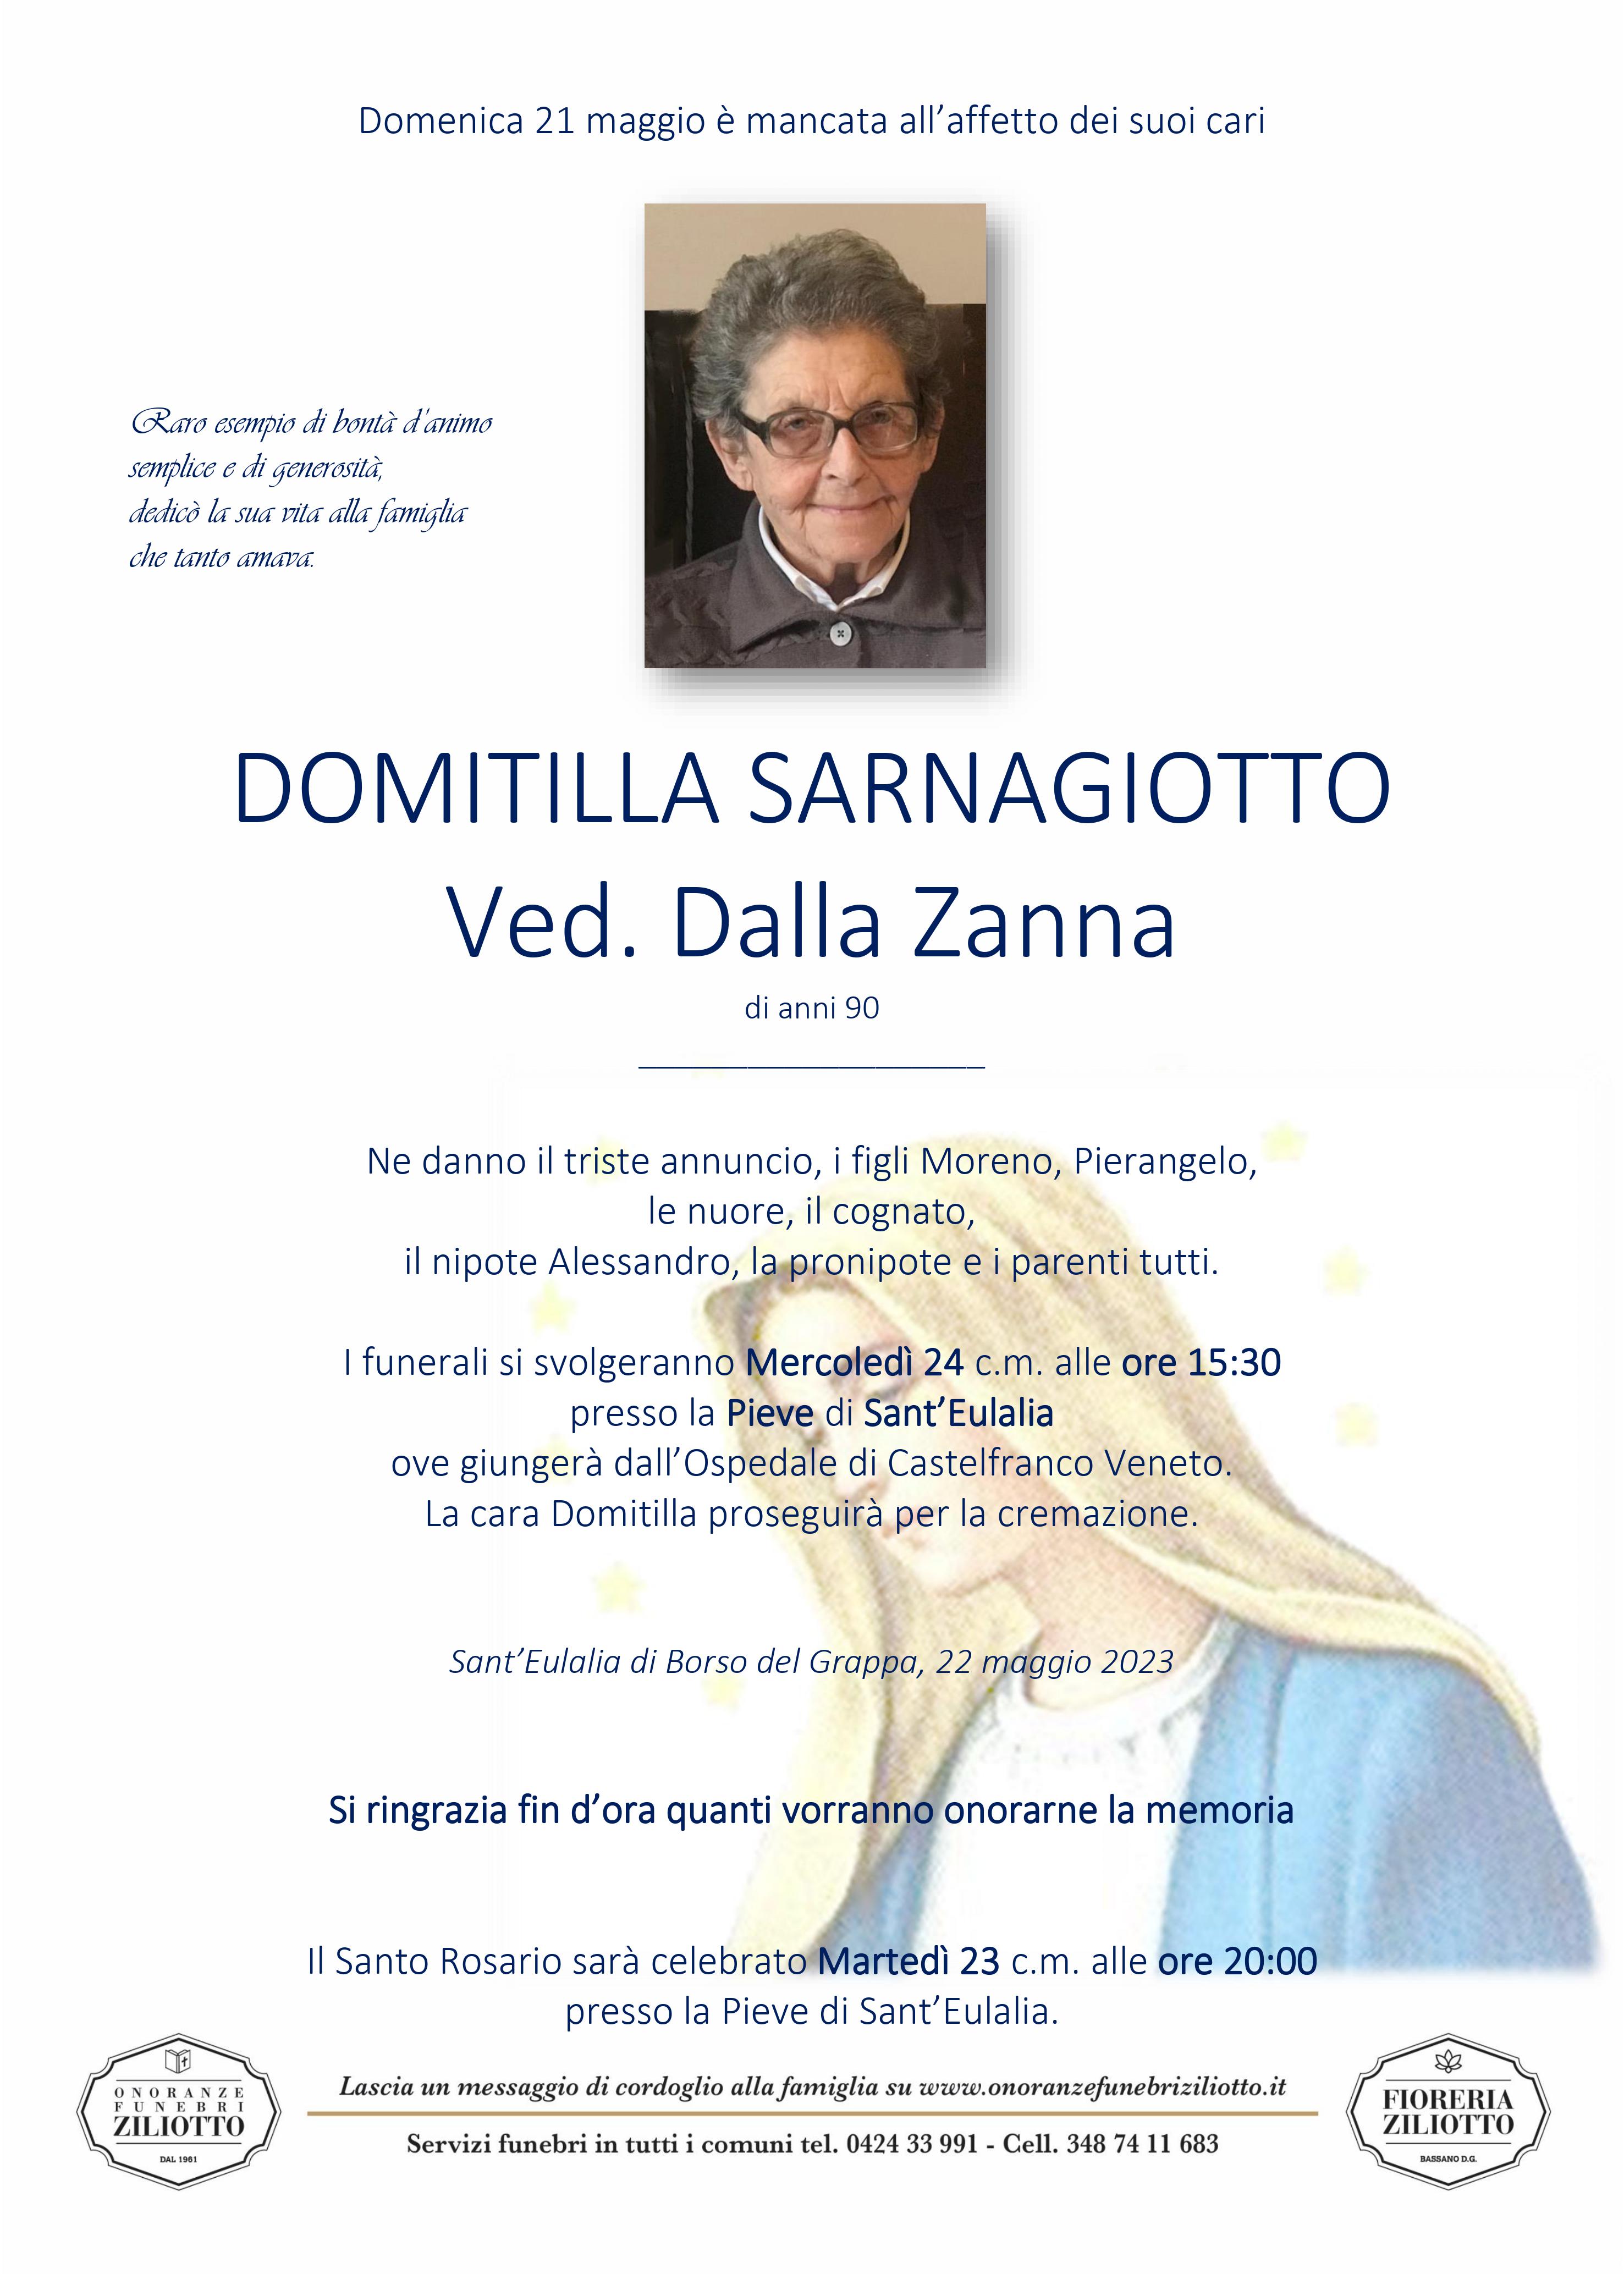 Domitilla Sarnagiotto - 90 anni - Sant' Eulalia